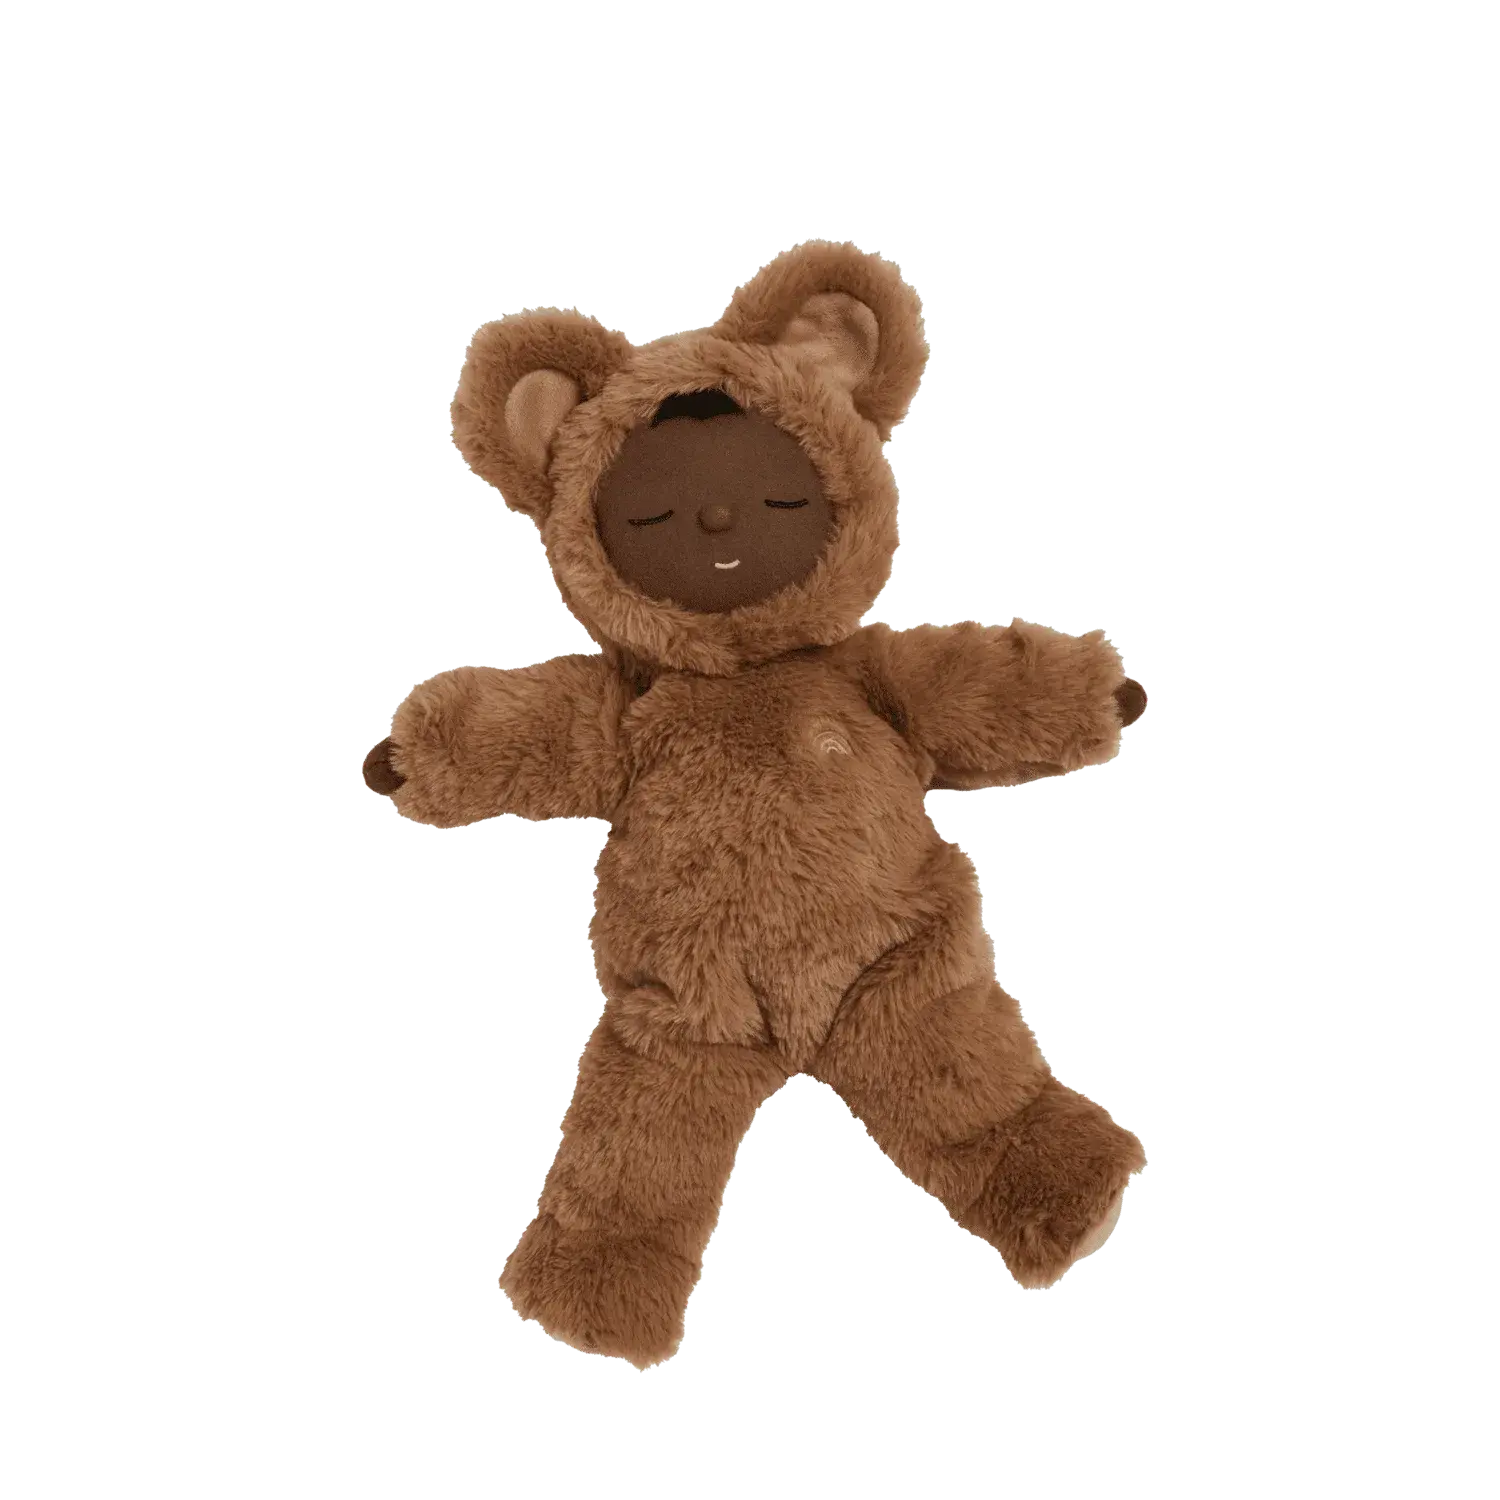 Cozy Dinkum Doll - Teddy Mini by Olli Ella